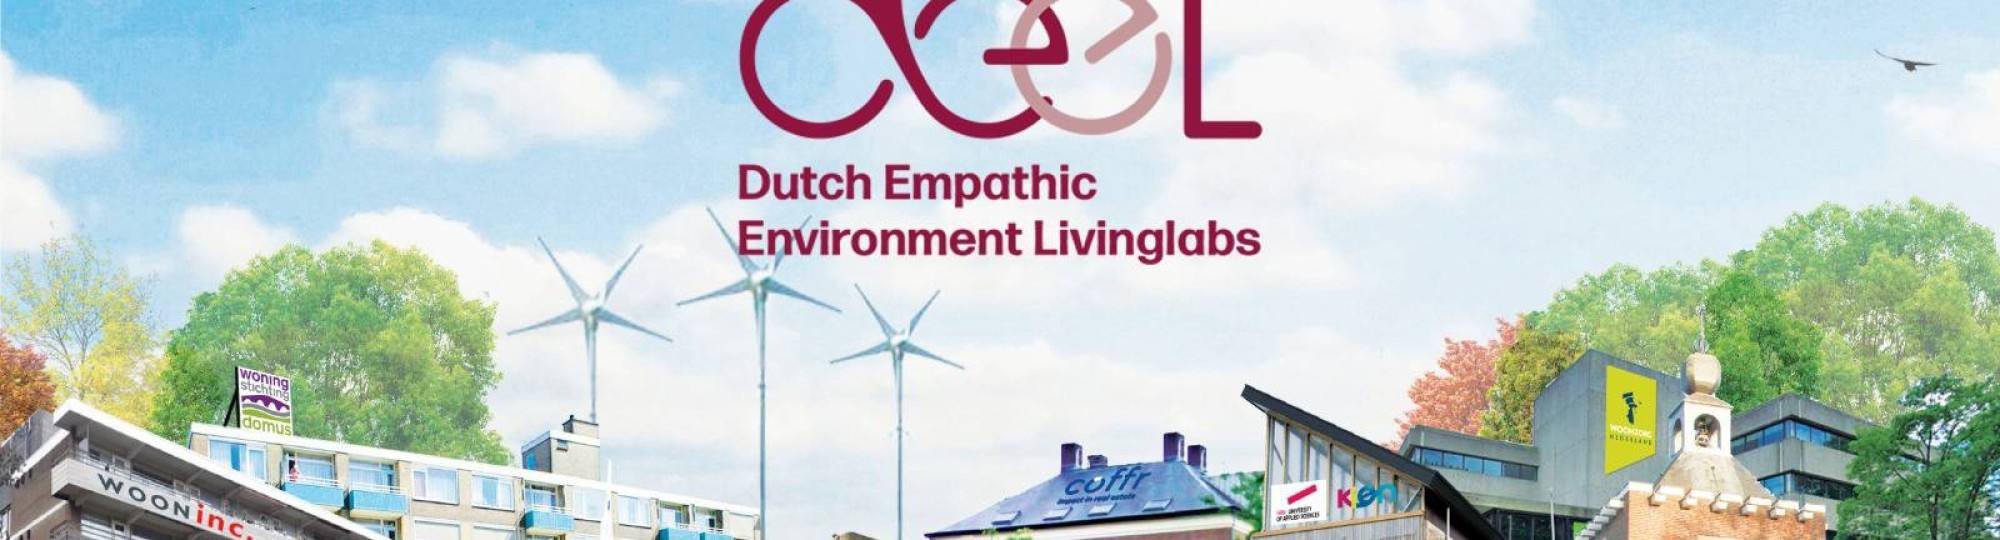 De coverplaat van DEEL, een werkwijze van het lectoraat Architecture in Health